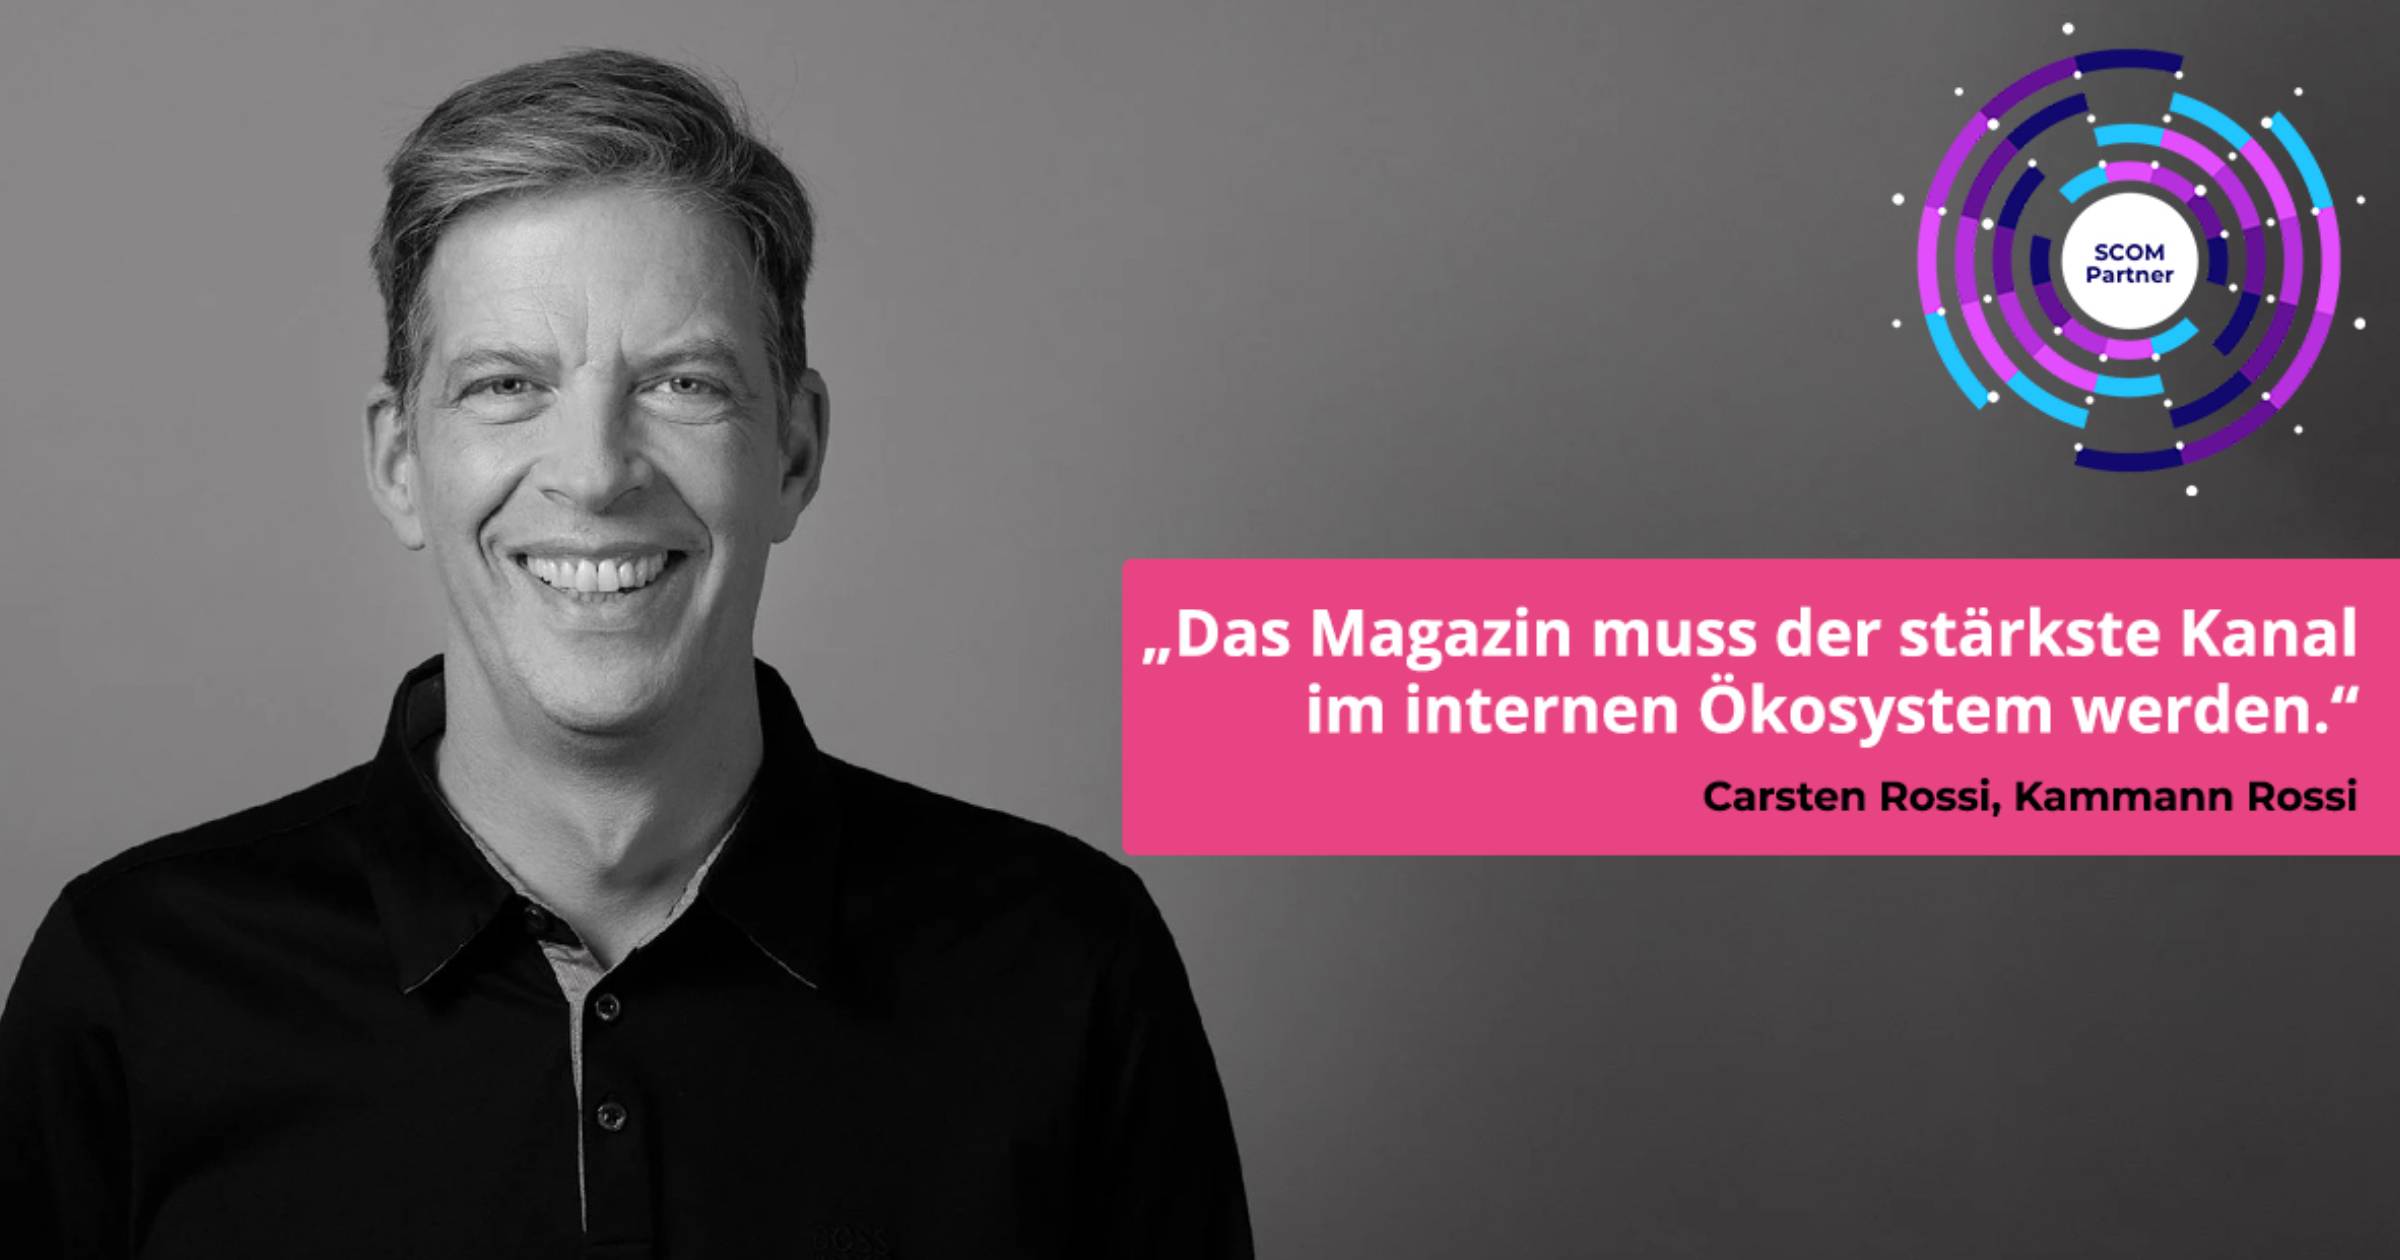 Interview mit Carsten Rossi: Das Magazin muss der stärkste Kanal im internen Ökosystem werden